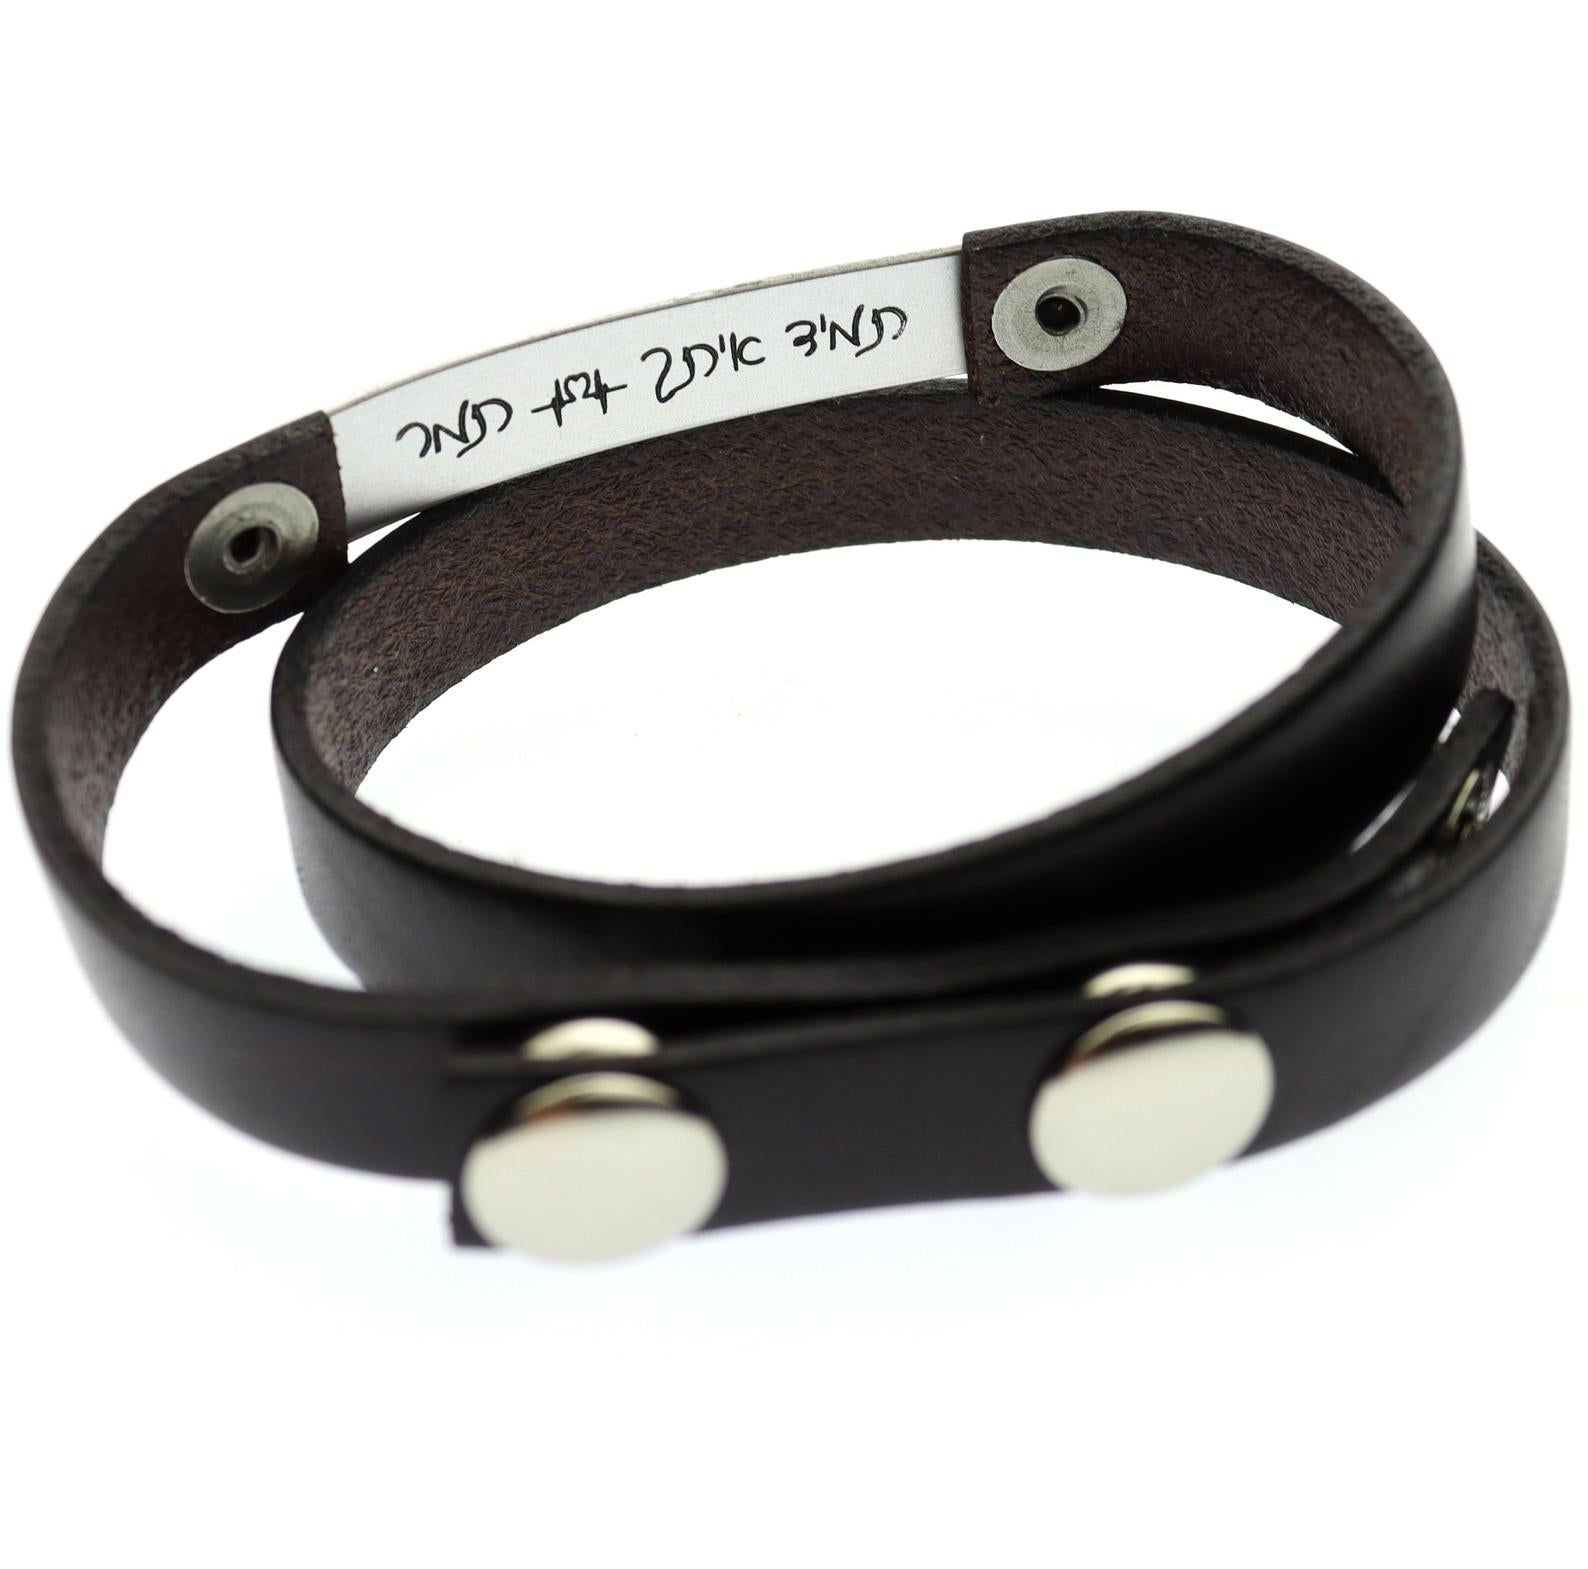 Men’s Bracelet - Men’s Leather Bracelet - Men’s Hamsa Bracelet - Men’s Jewelry - Men’s Gift - Boyfriend Gift - Husband Gift - Male, Handmade 7.5